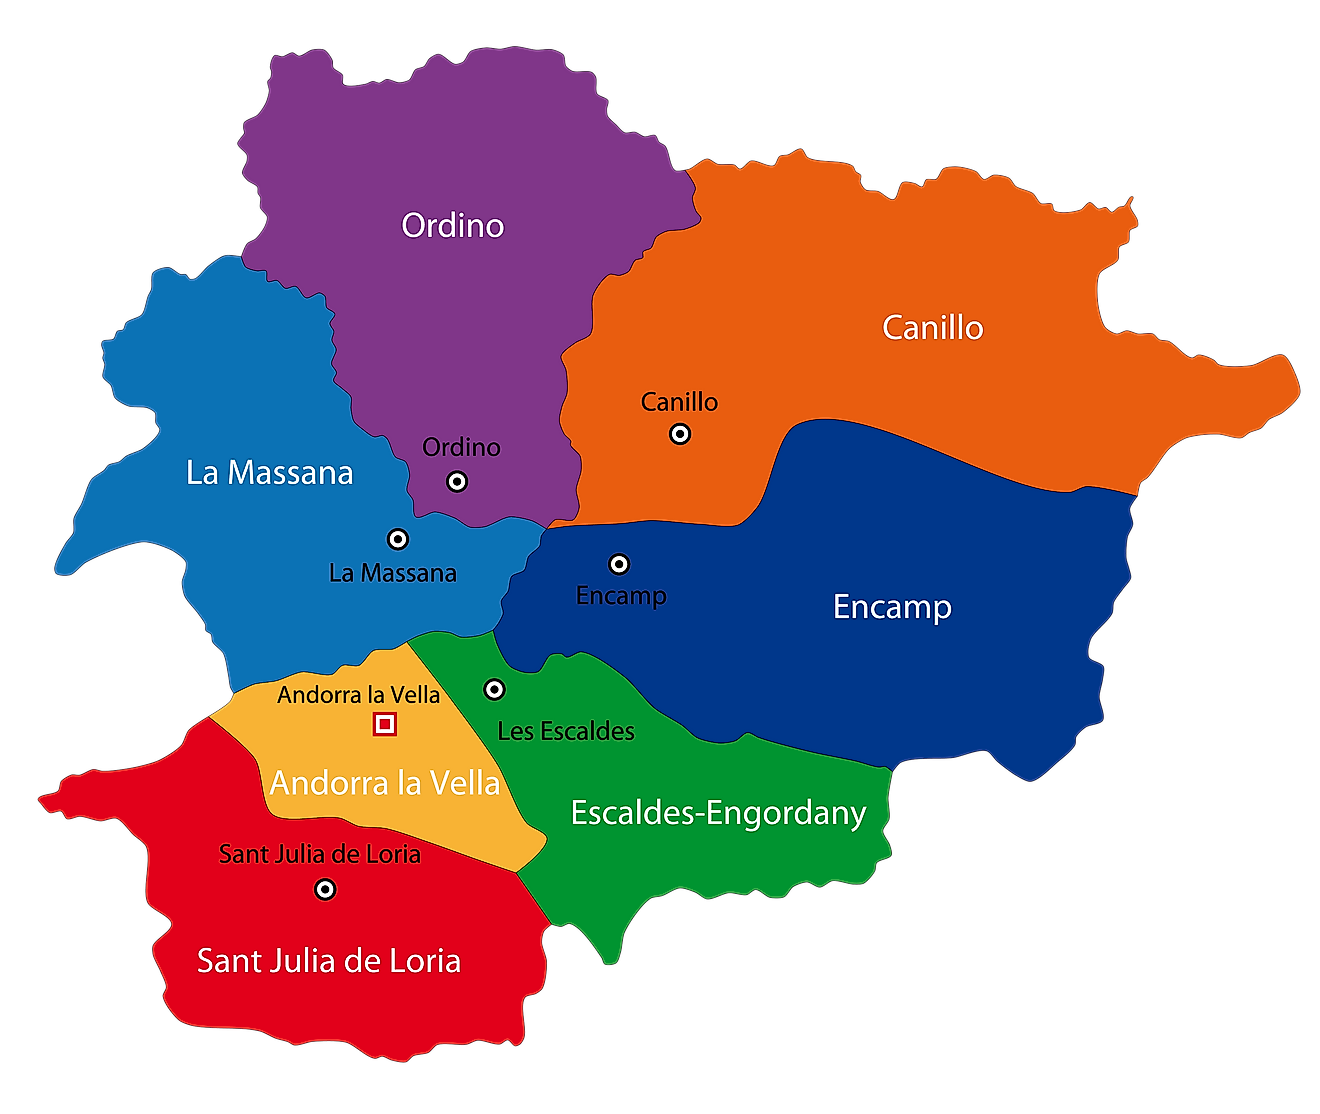 Mapa Político de Andorra mostrando sus 7 parroquias y la capital de Andorra la Vella